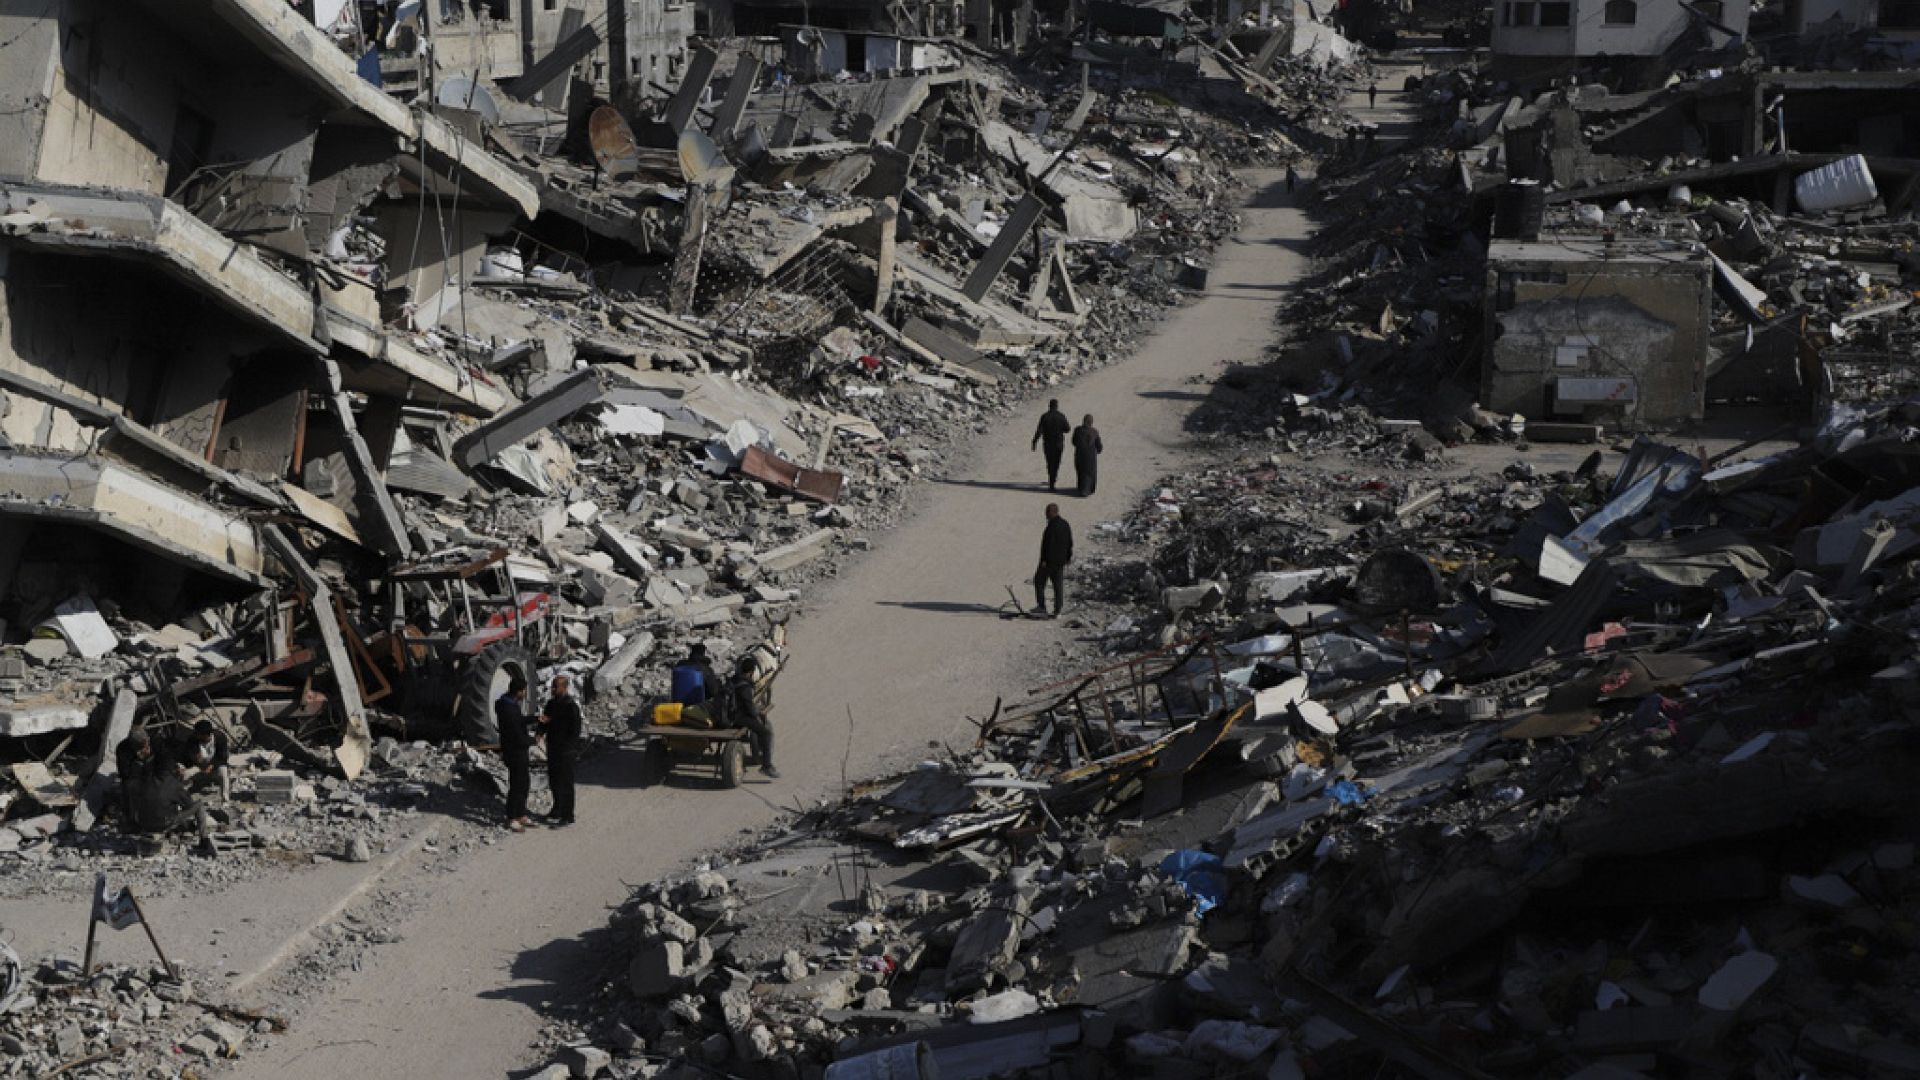 İsrail’in yardım kuyruğu saldırısına dünyadan tepkiler: Savaş suçu, soykırım, insanlık suçu